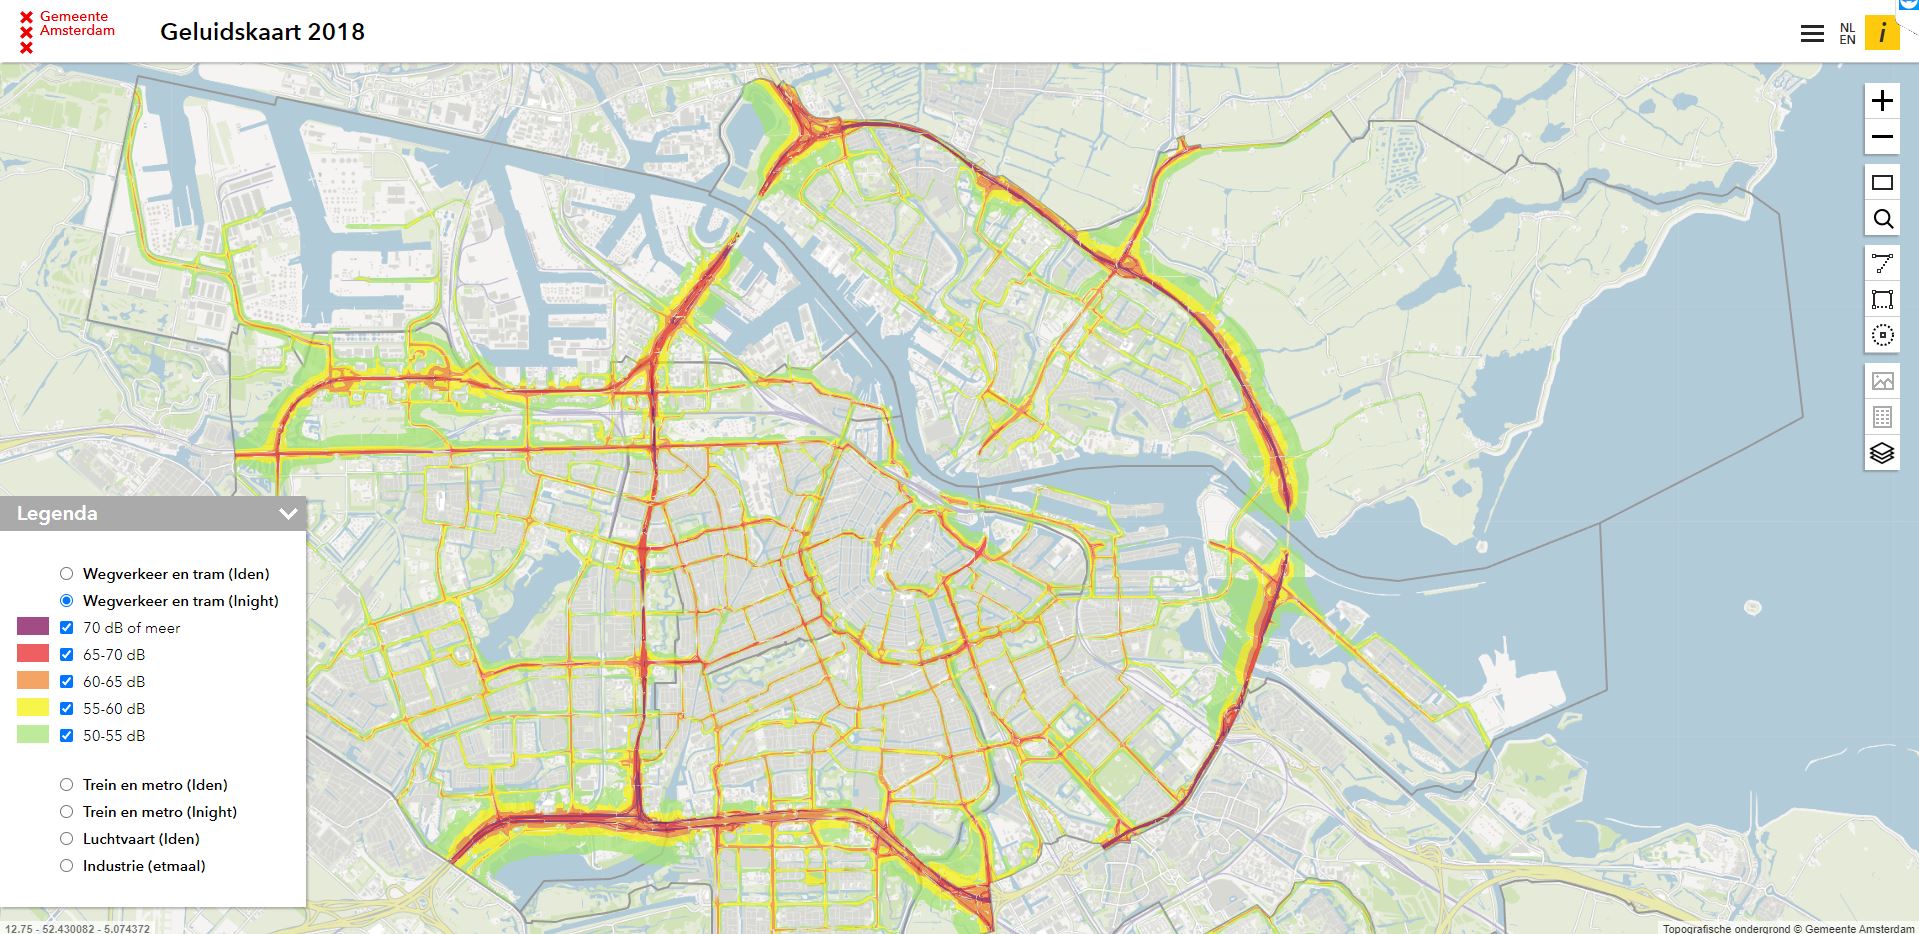 Kaart van Amsterdam met zones van geluidsoverlast